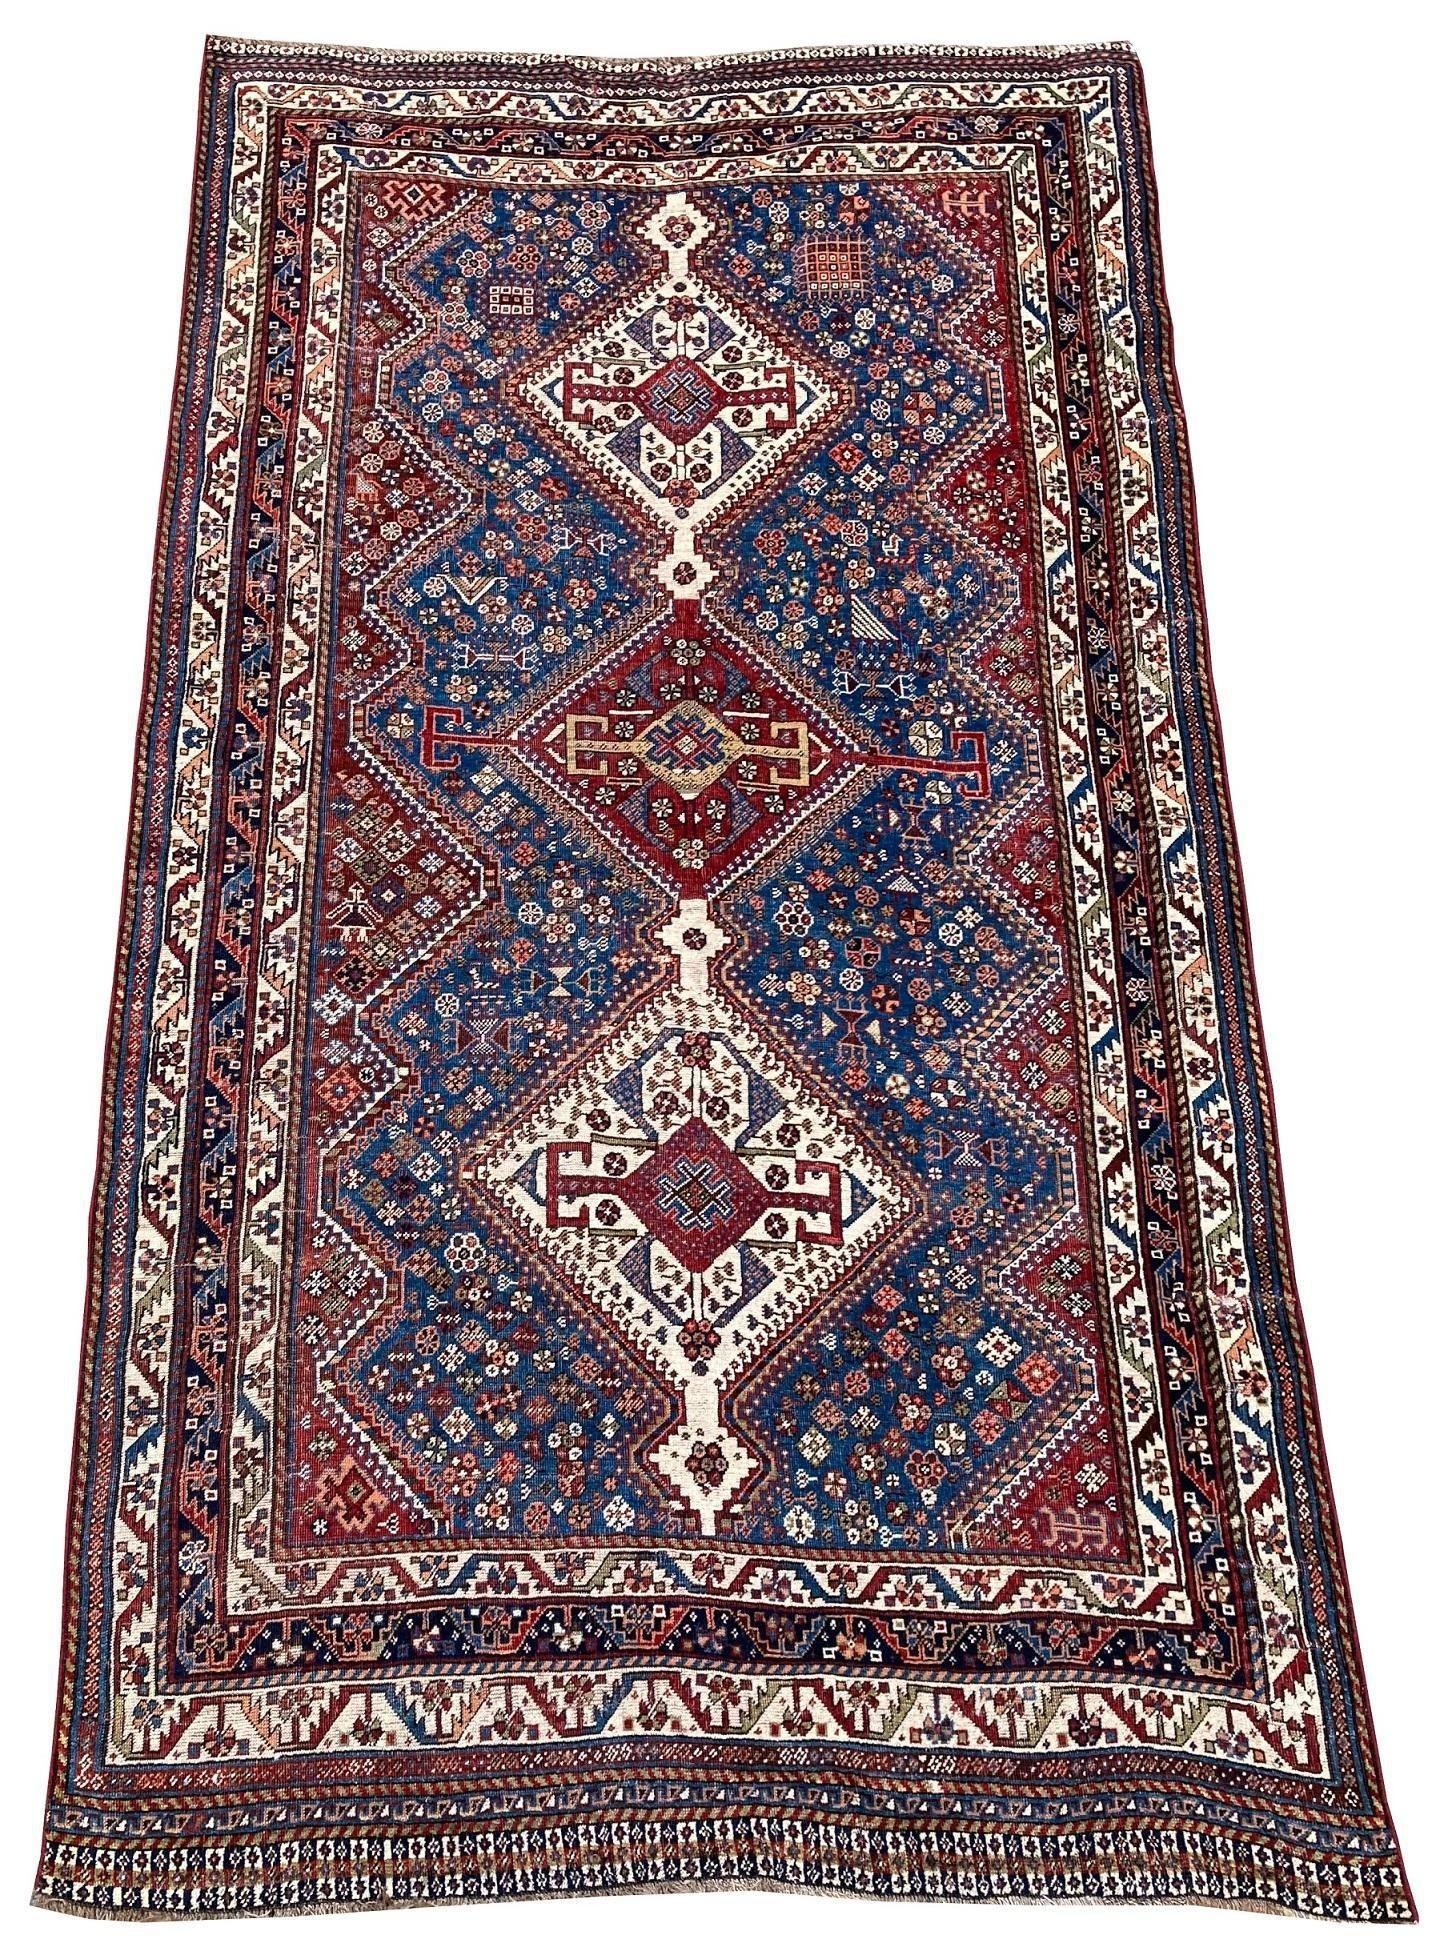 Un fabuleux tapis Qashqai ancien, tissé à la main par la tribu nomade éponyme vers 1900, avec un motif à 3 médaillons sur un champ bleu marine et de superbes couleurs secondaires. Notez les petites figures dans tout le champ (voir les